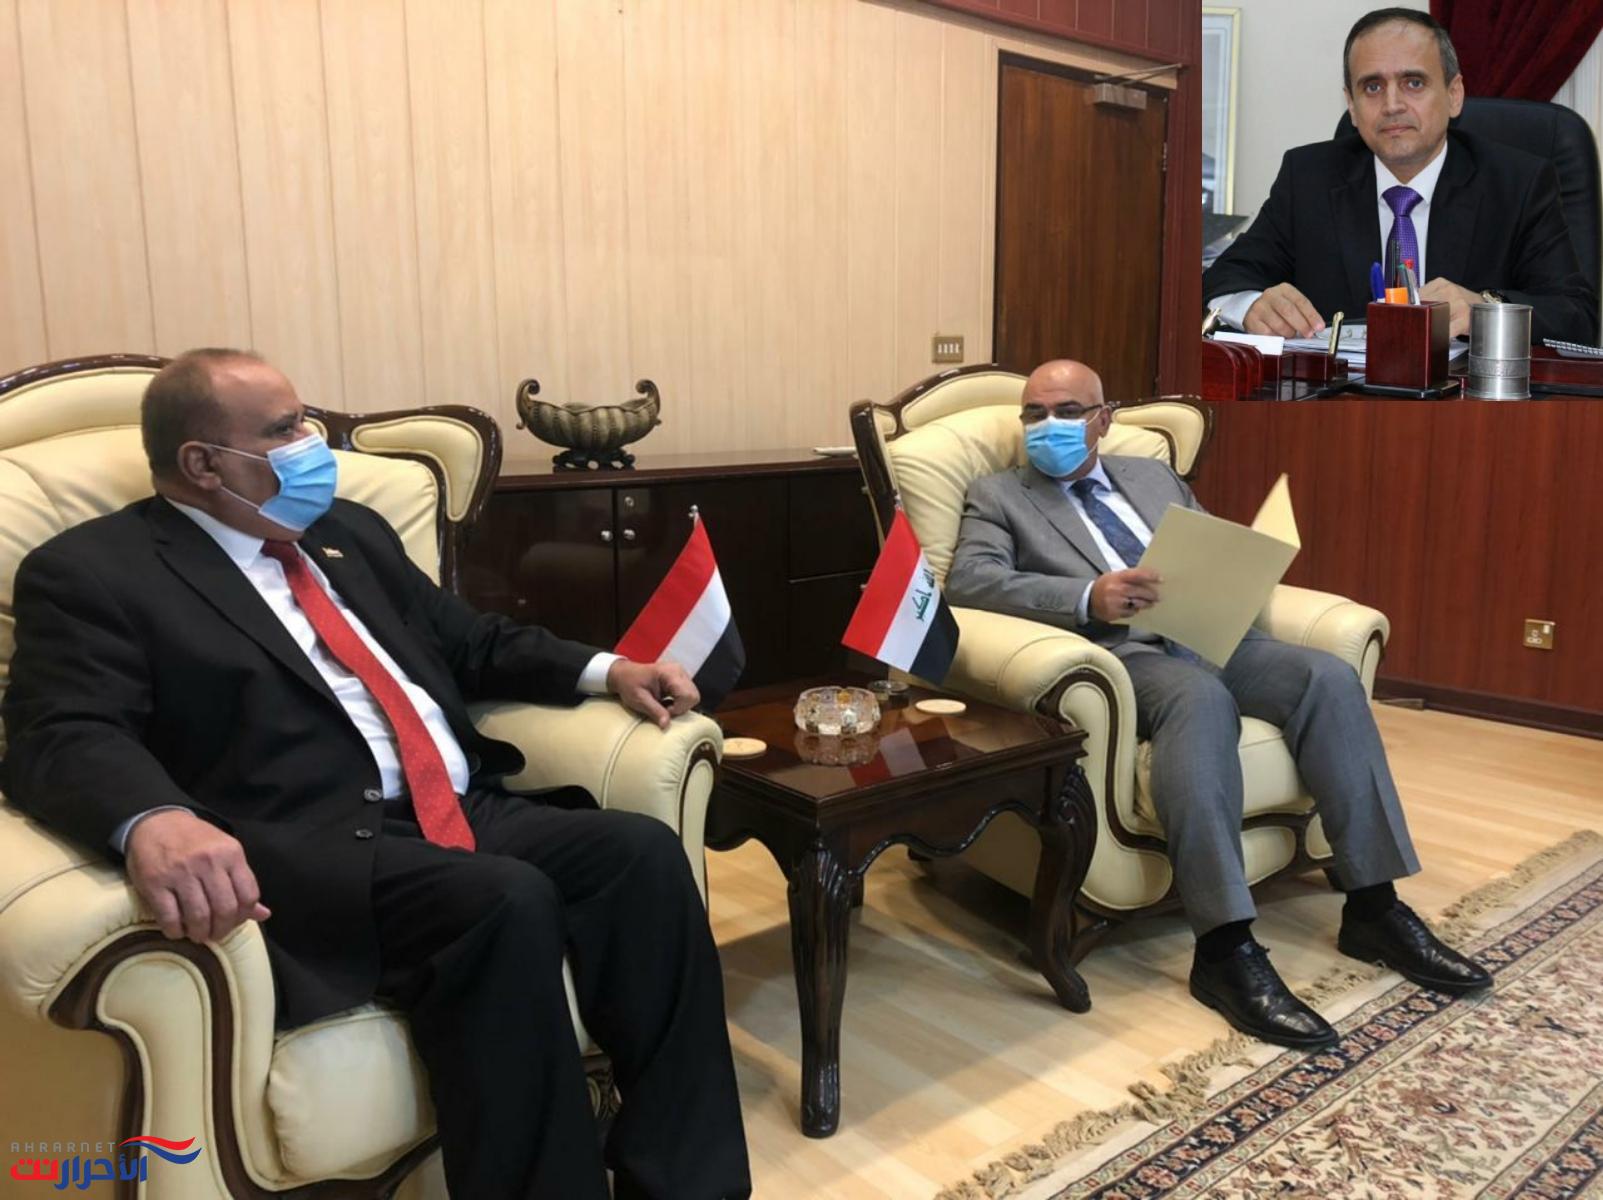 الوزير "الوصابي" يتحرك لاستئناف التعاون التعليمي بين اليمن والعراق